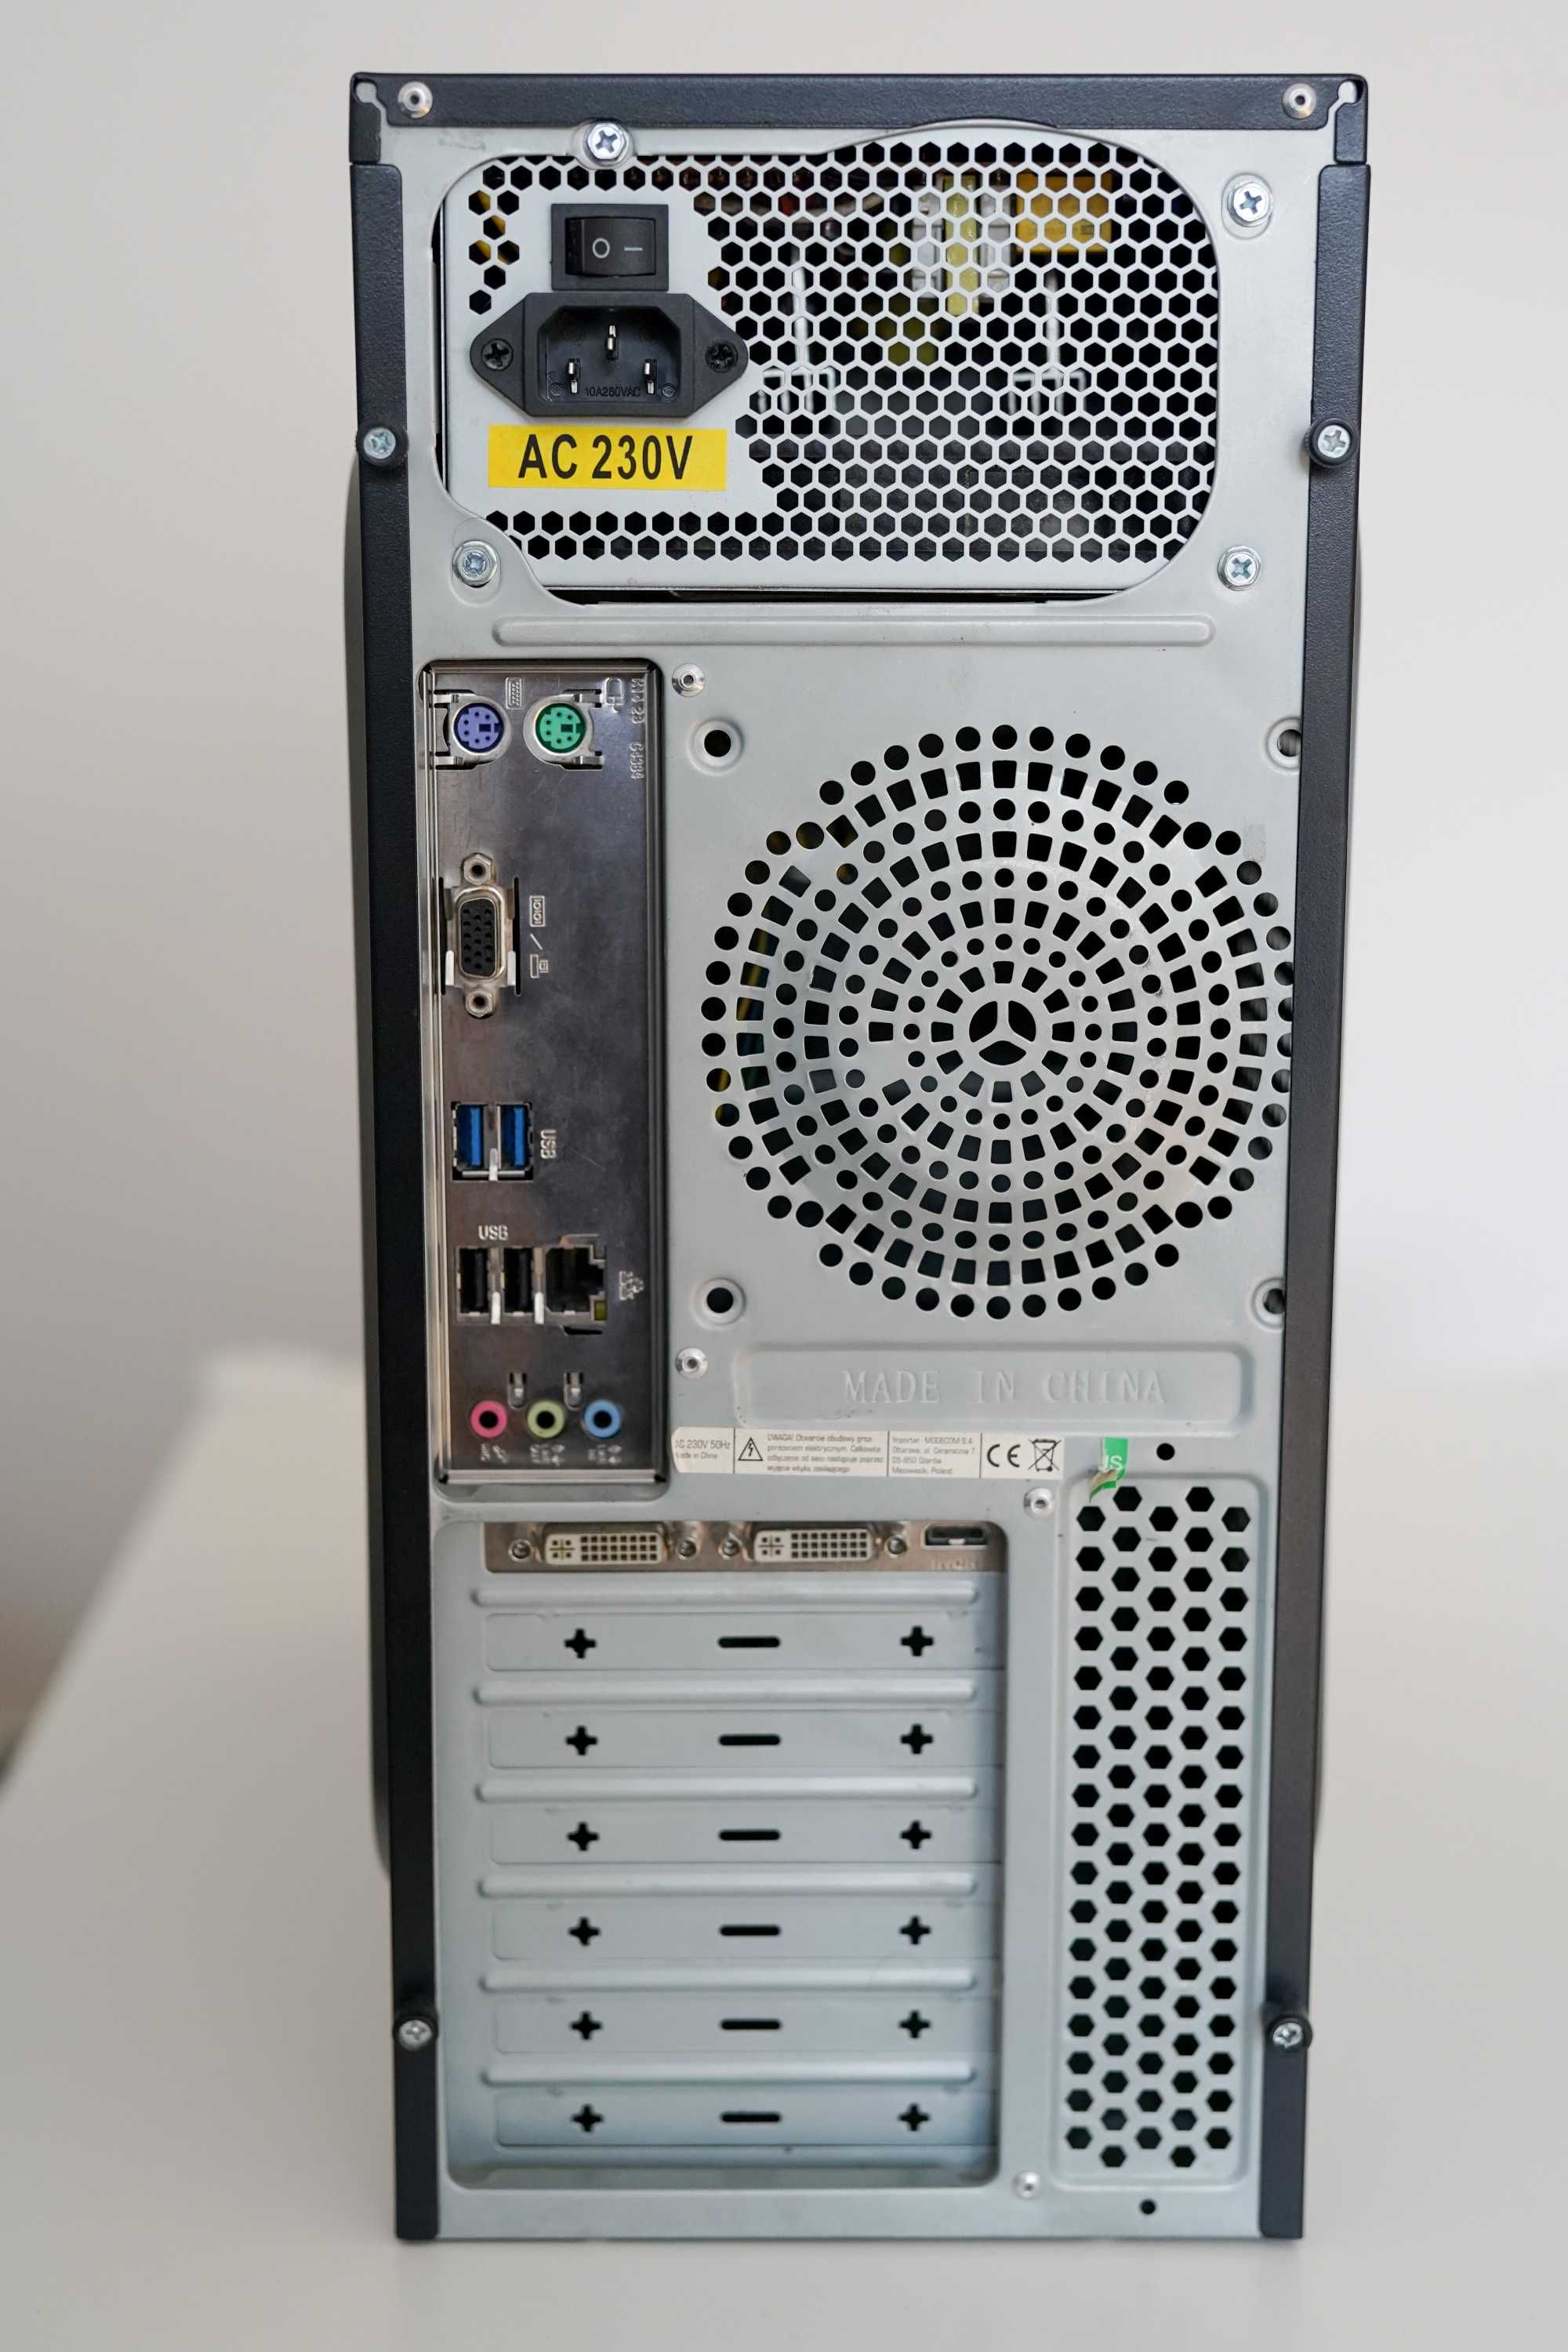 Komputer Intel i5 | Geforce GTX 460 1Gb | 8Gb RAM | 1Tb